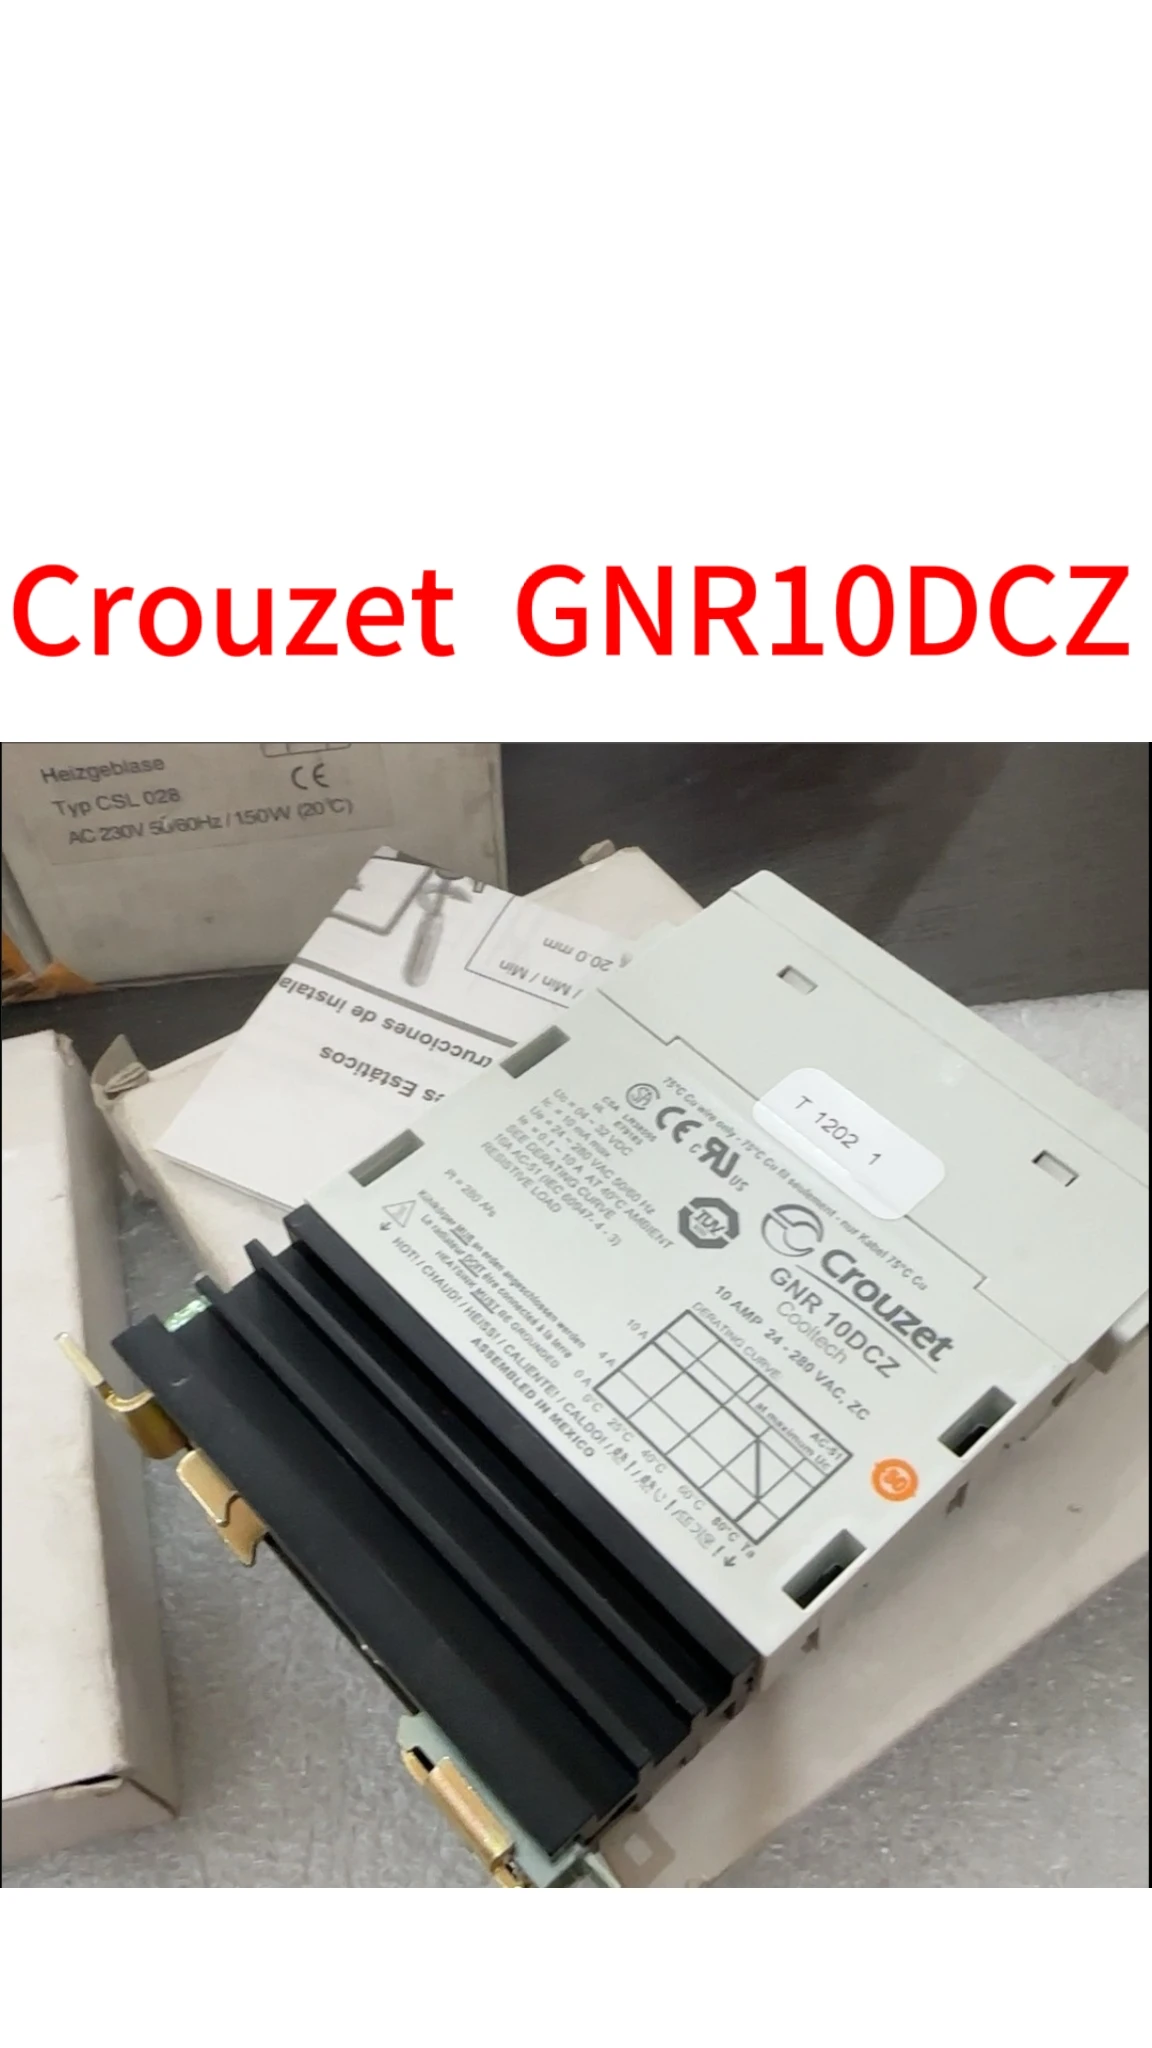 

brand new Crouzet GNR10DCZ